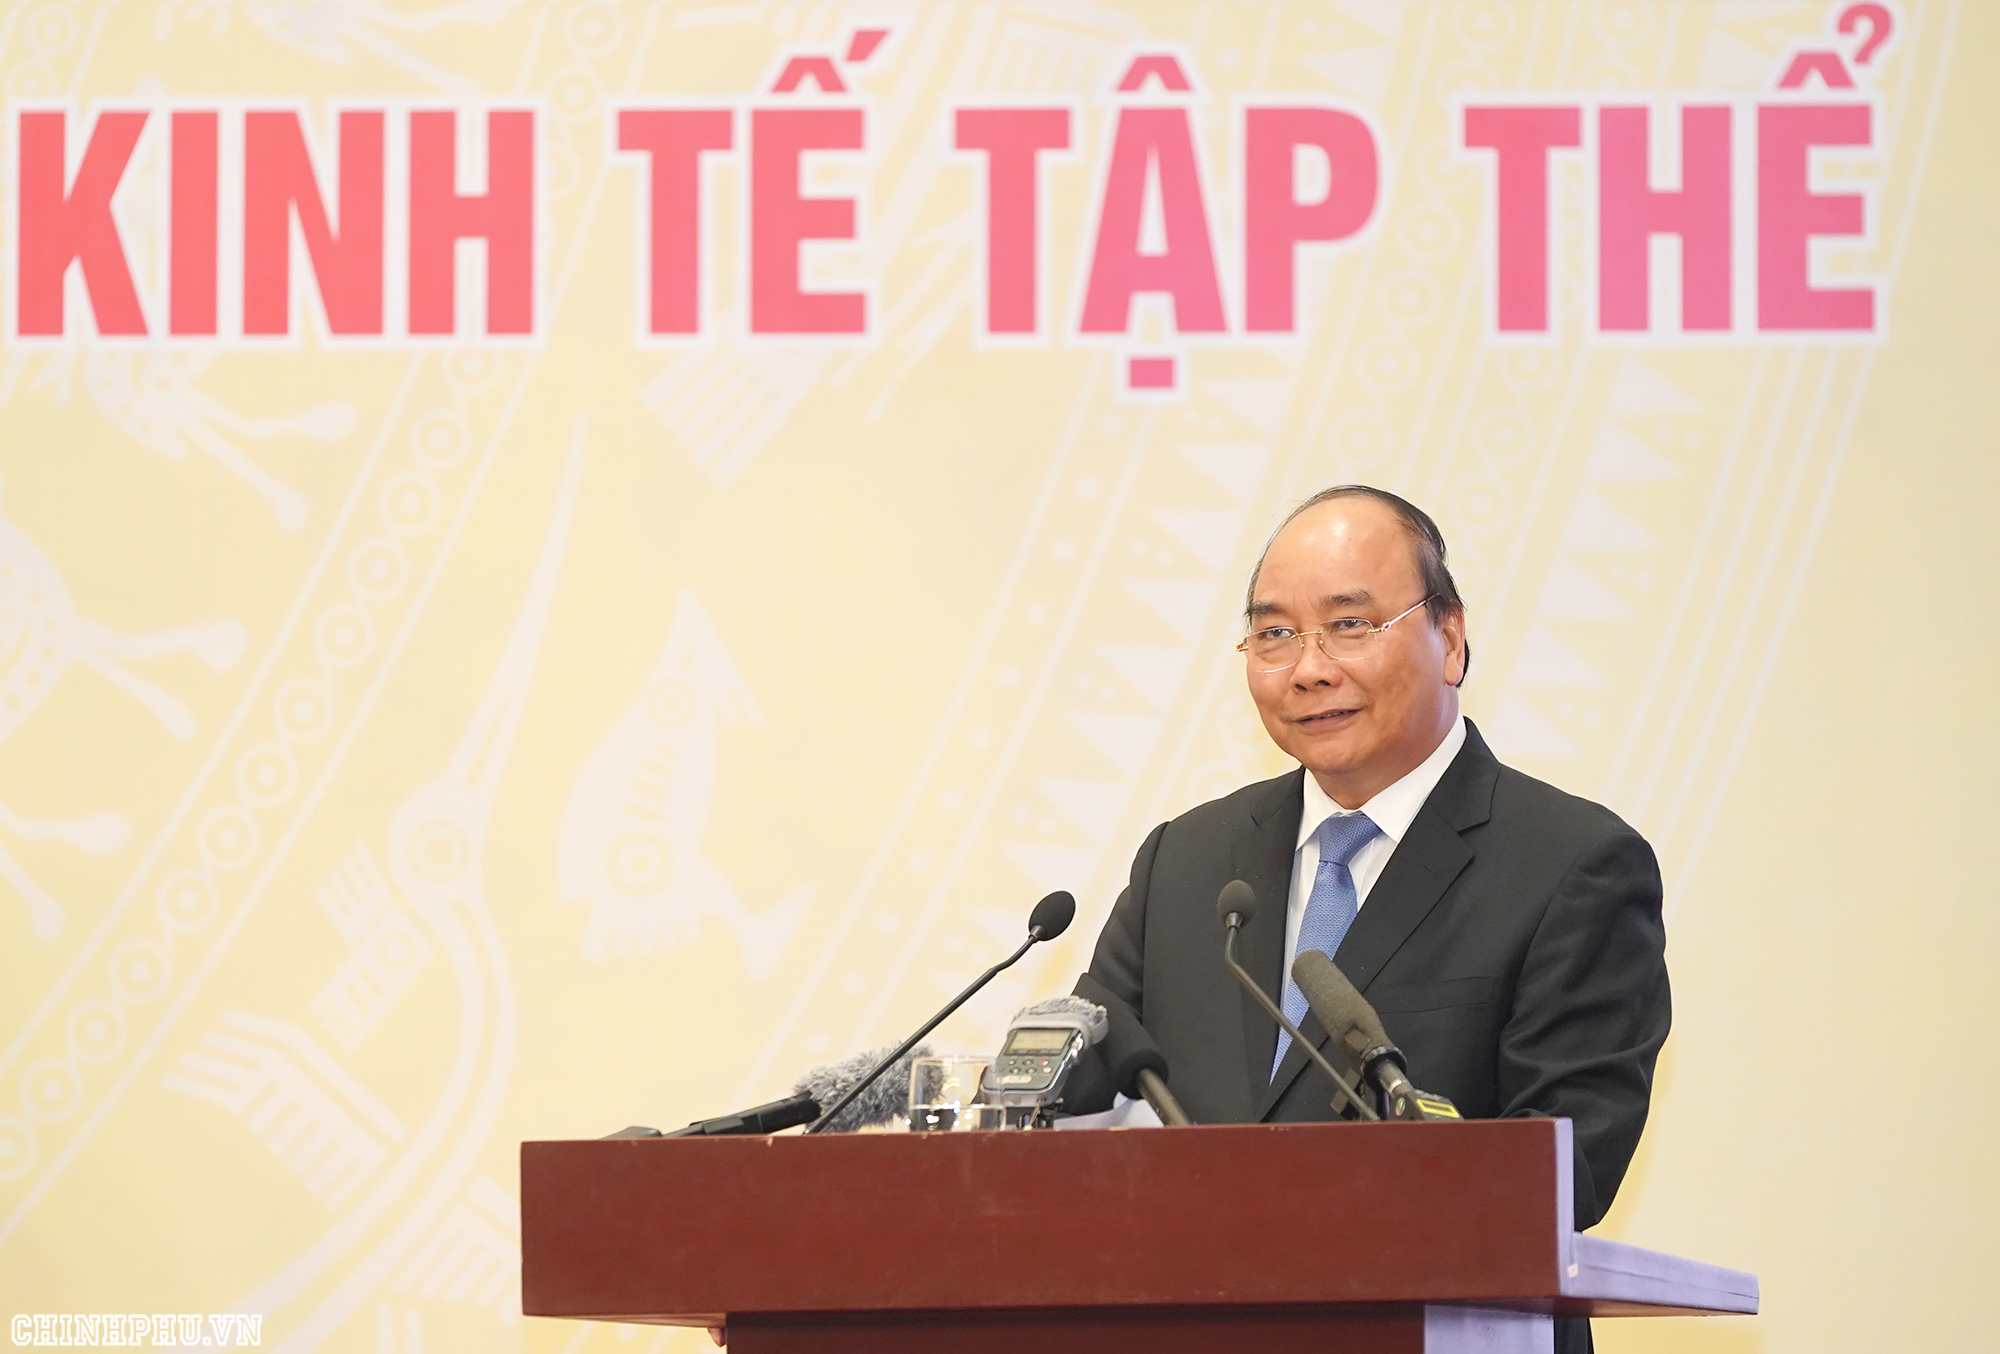 Thủ tướng Nguyễn Xuân Phúc phát biểu tại Hội nghị - Ảnh: VGP/Quang Hiếu